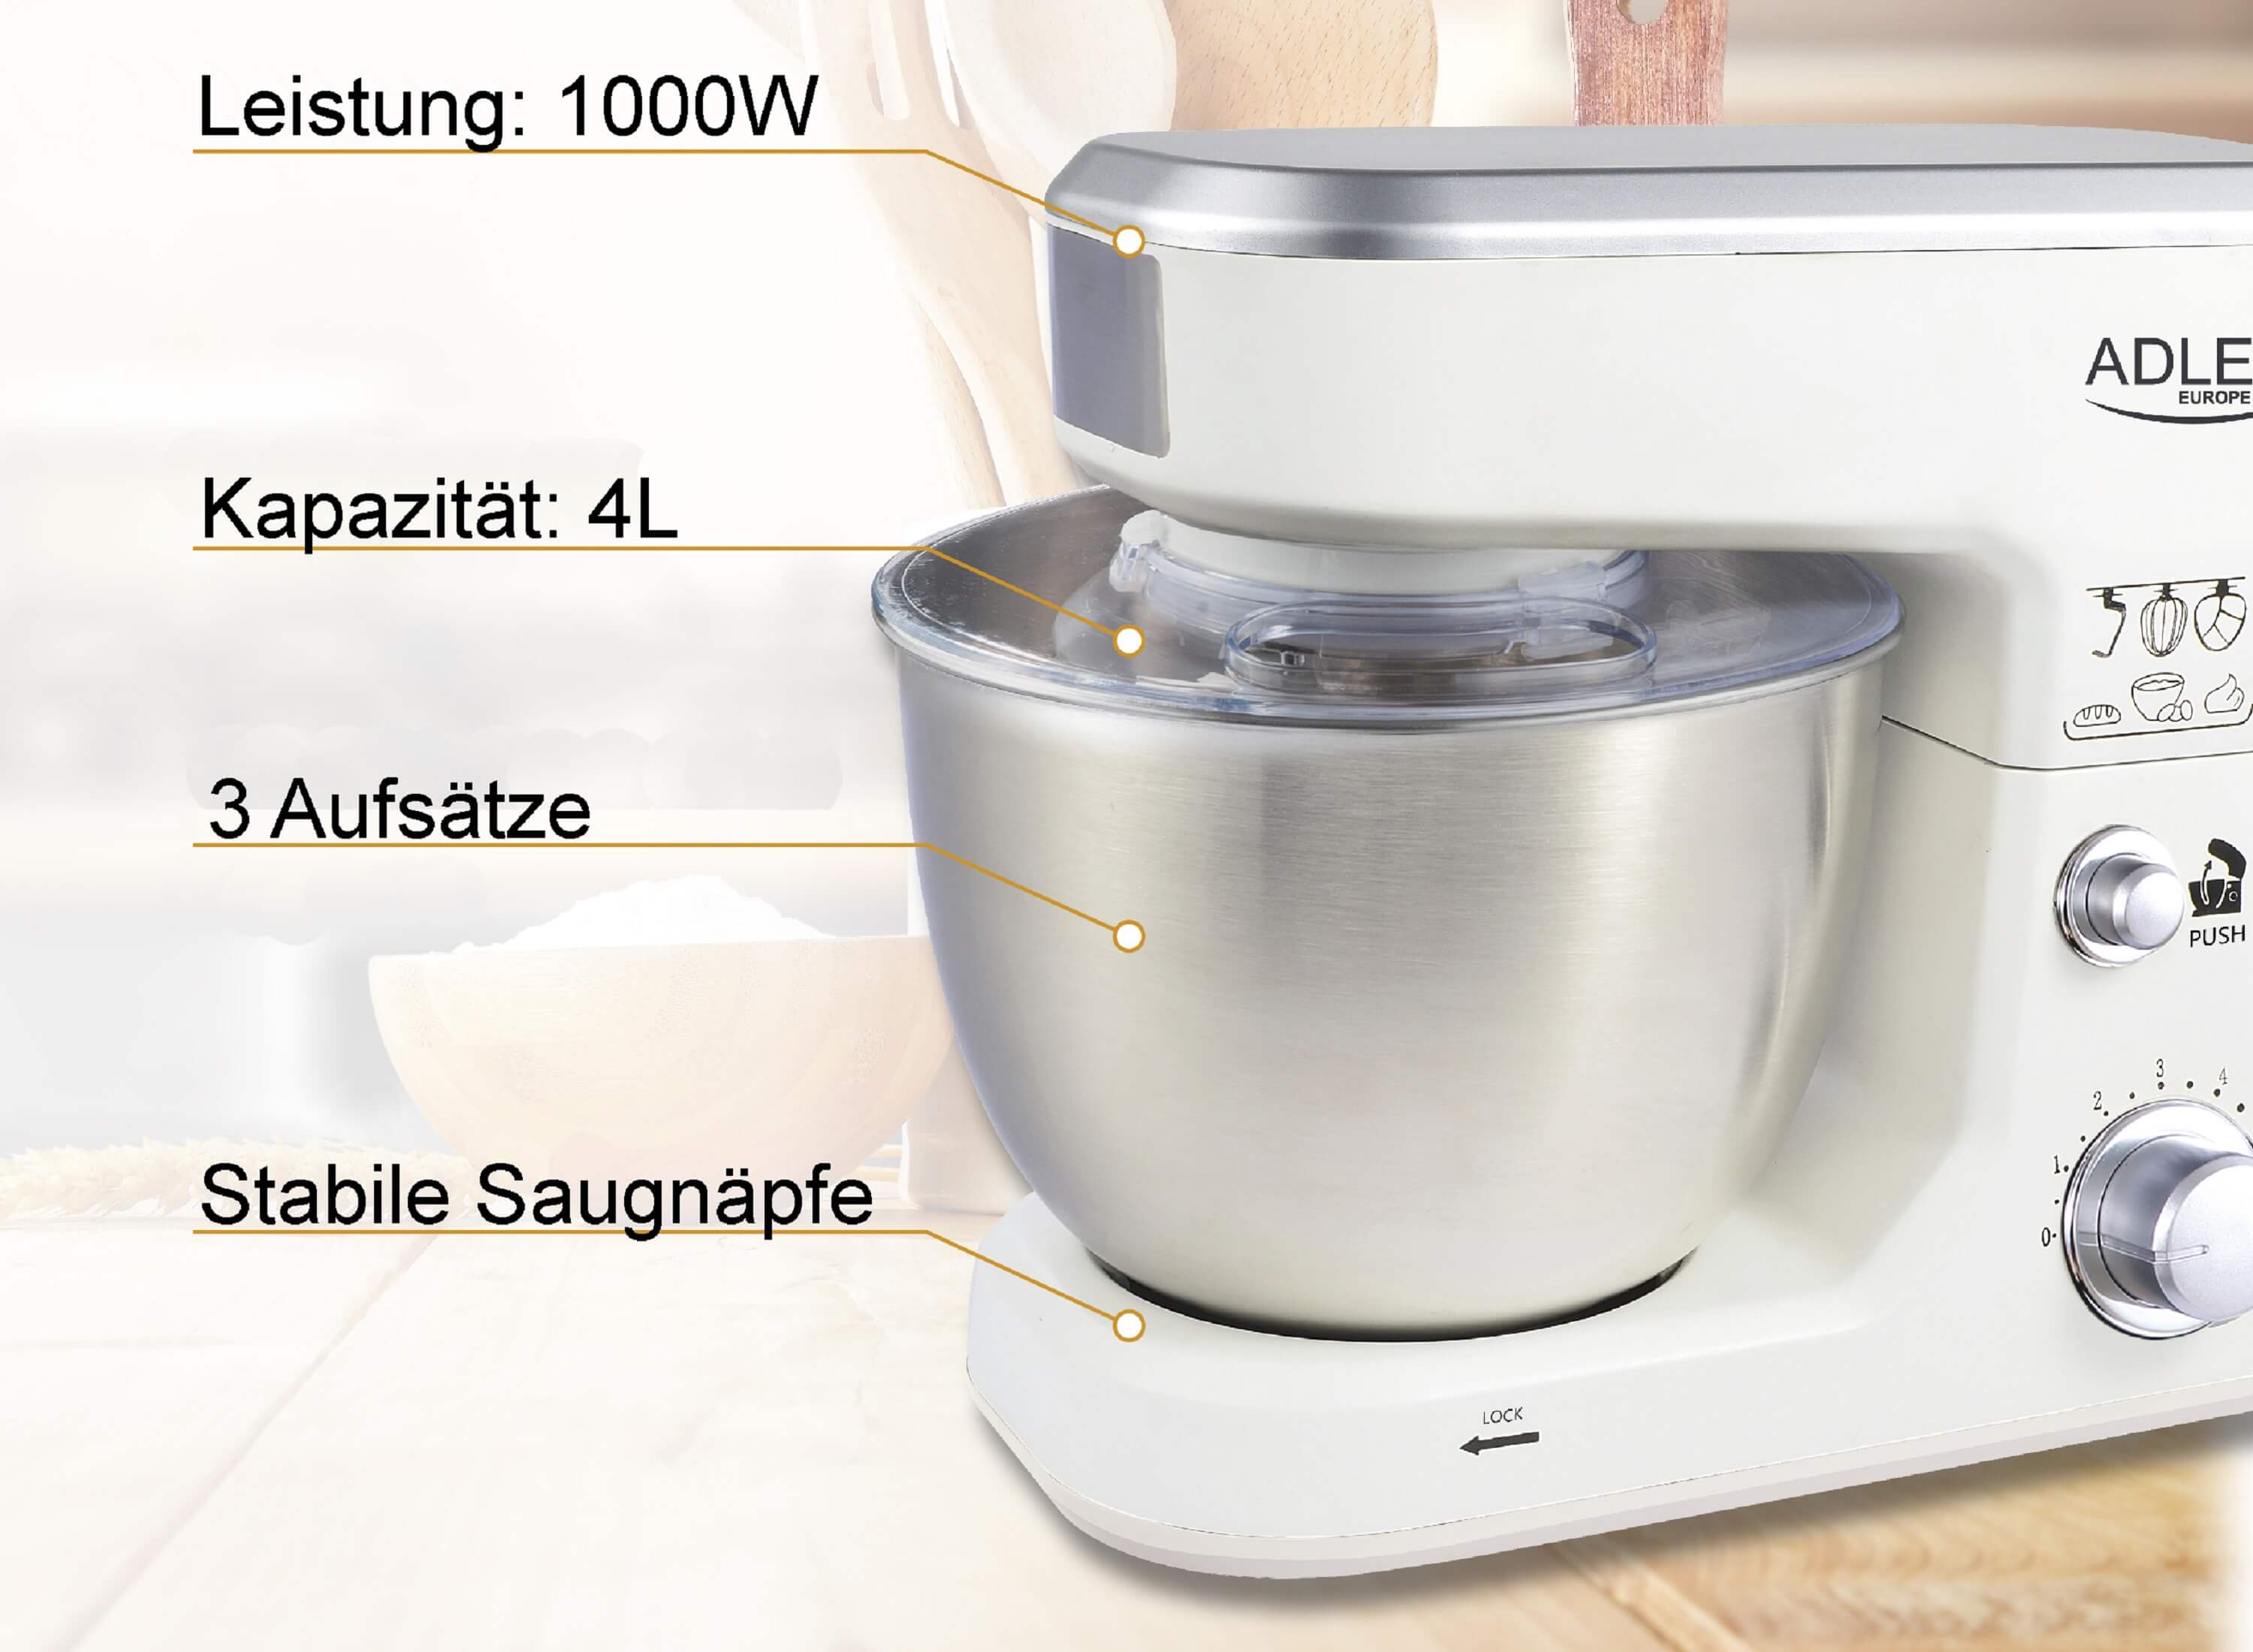 ADLER EUROPE AD-4216 Küchenmaschine (Rührschüsselkapazität: Liter, Watt) 4 Weiß 1000